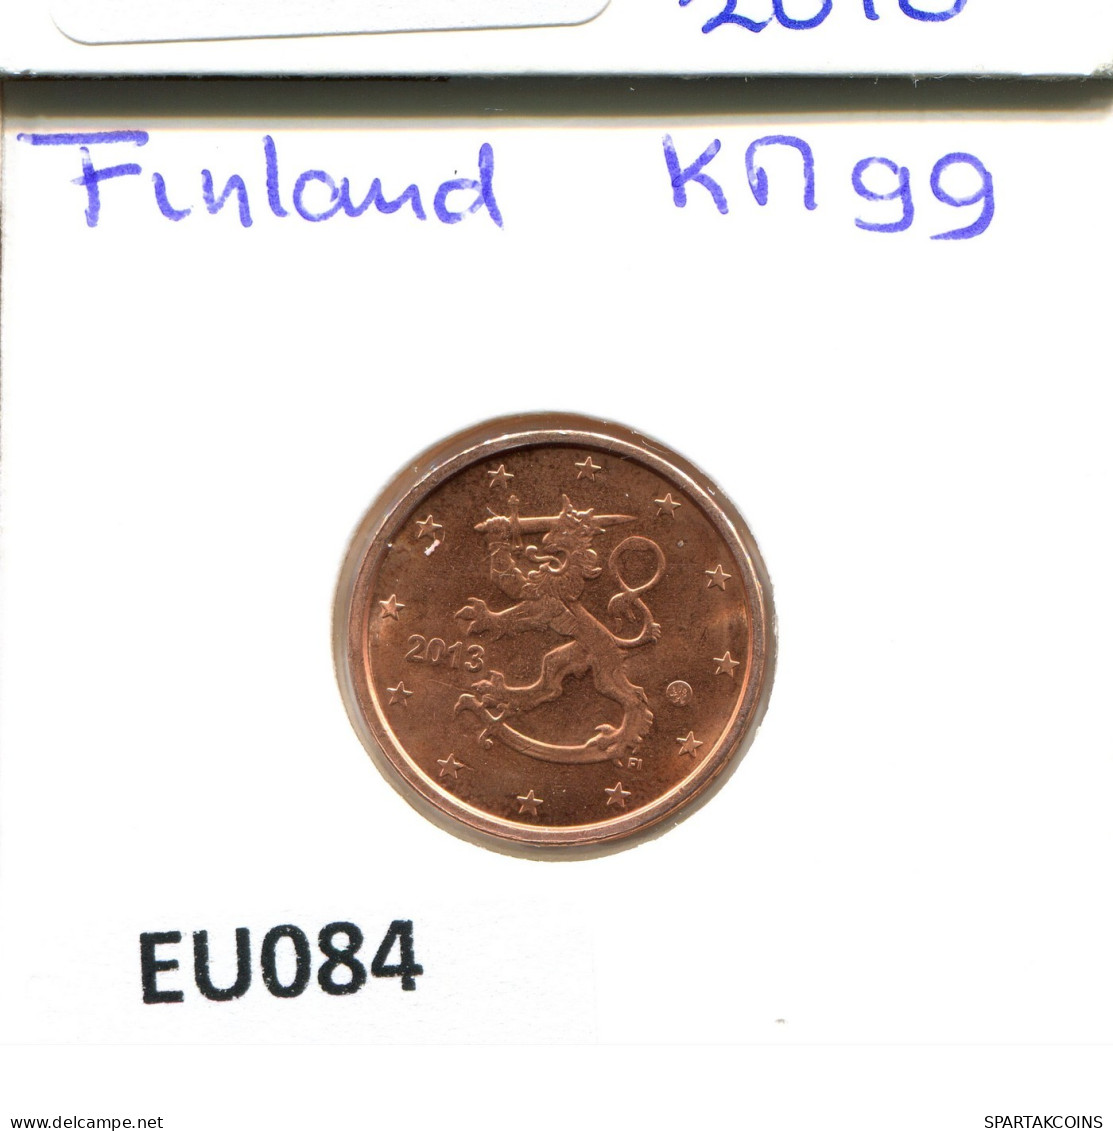 2 EURO CENTS 2013 FINLAND Coin #EU084.U.A - Finlande